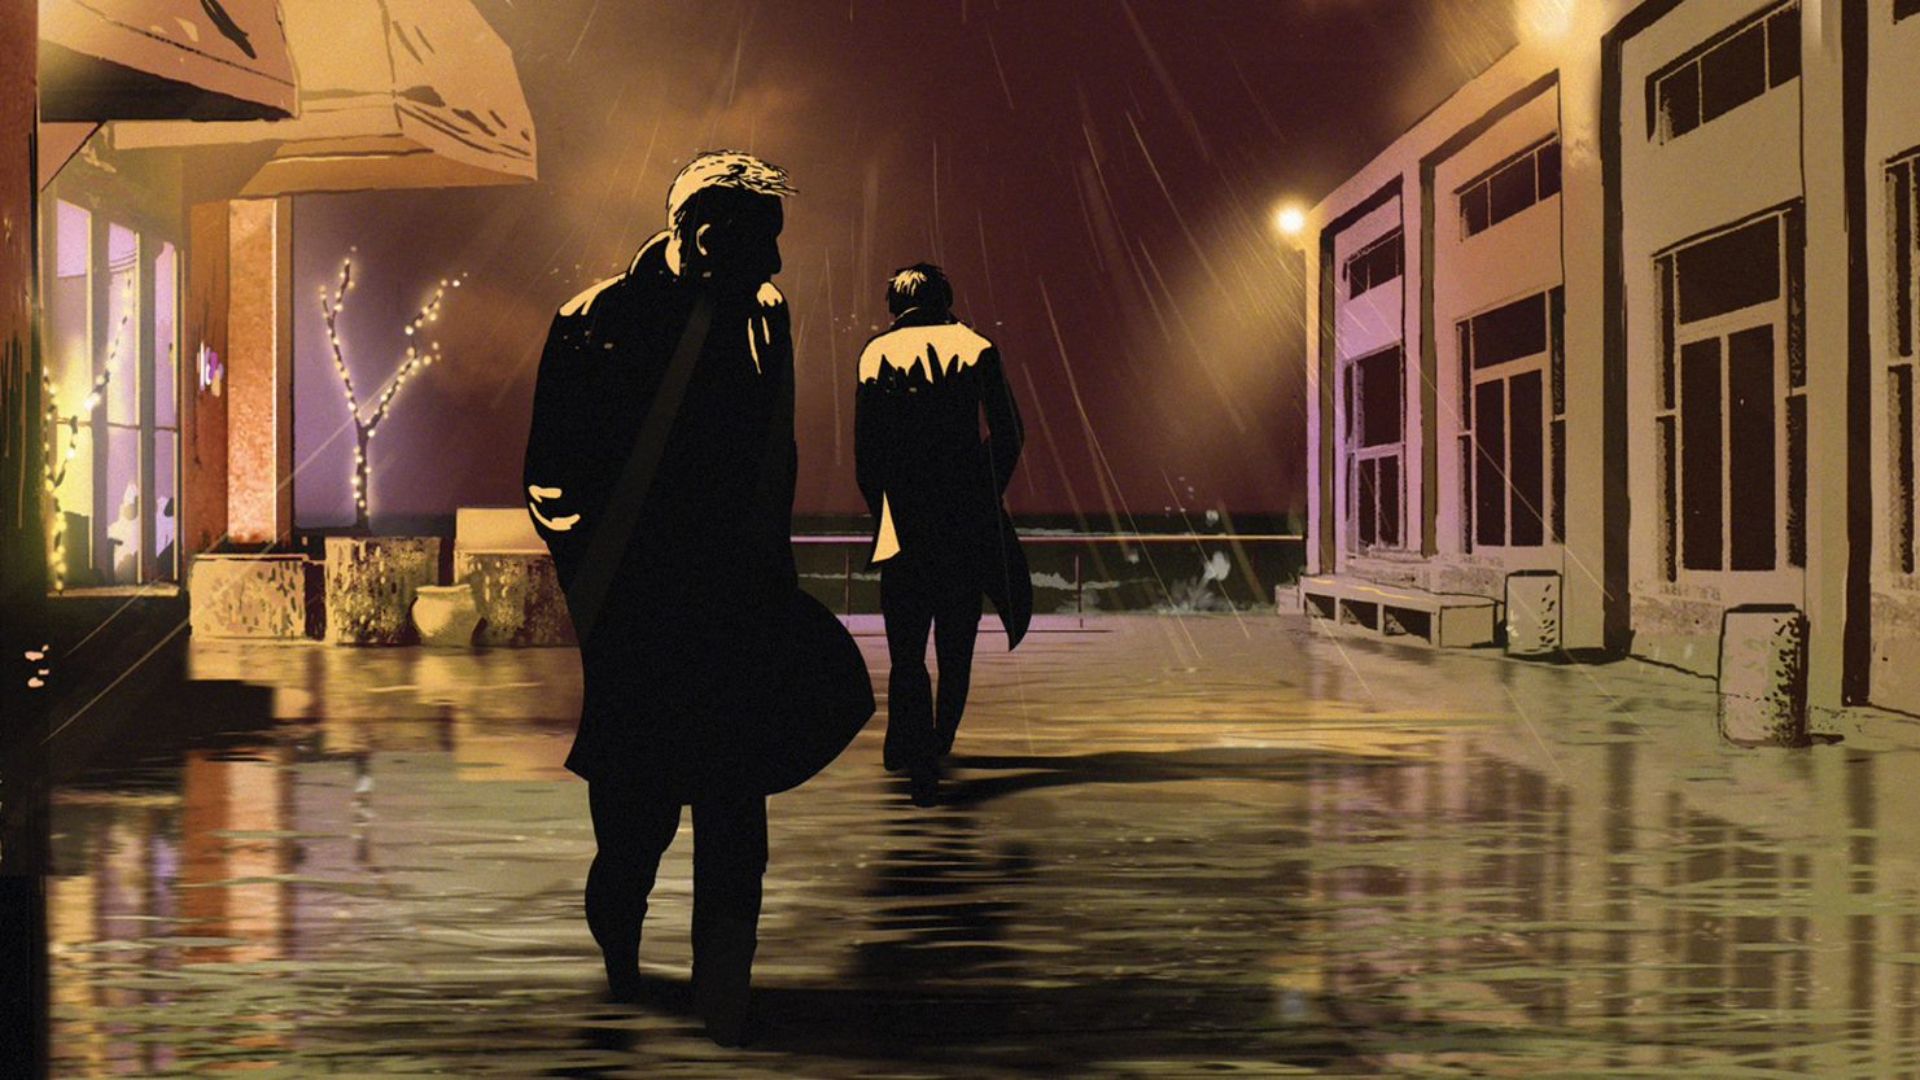 Film still of animated doc film Waltz with Bashir